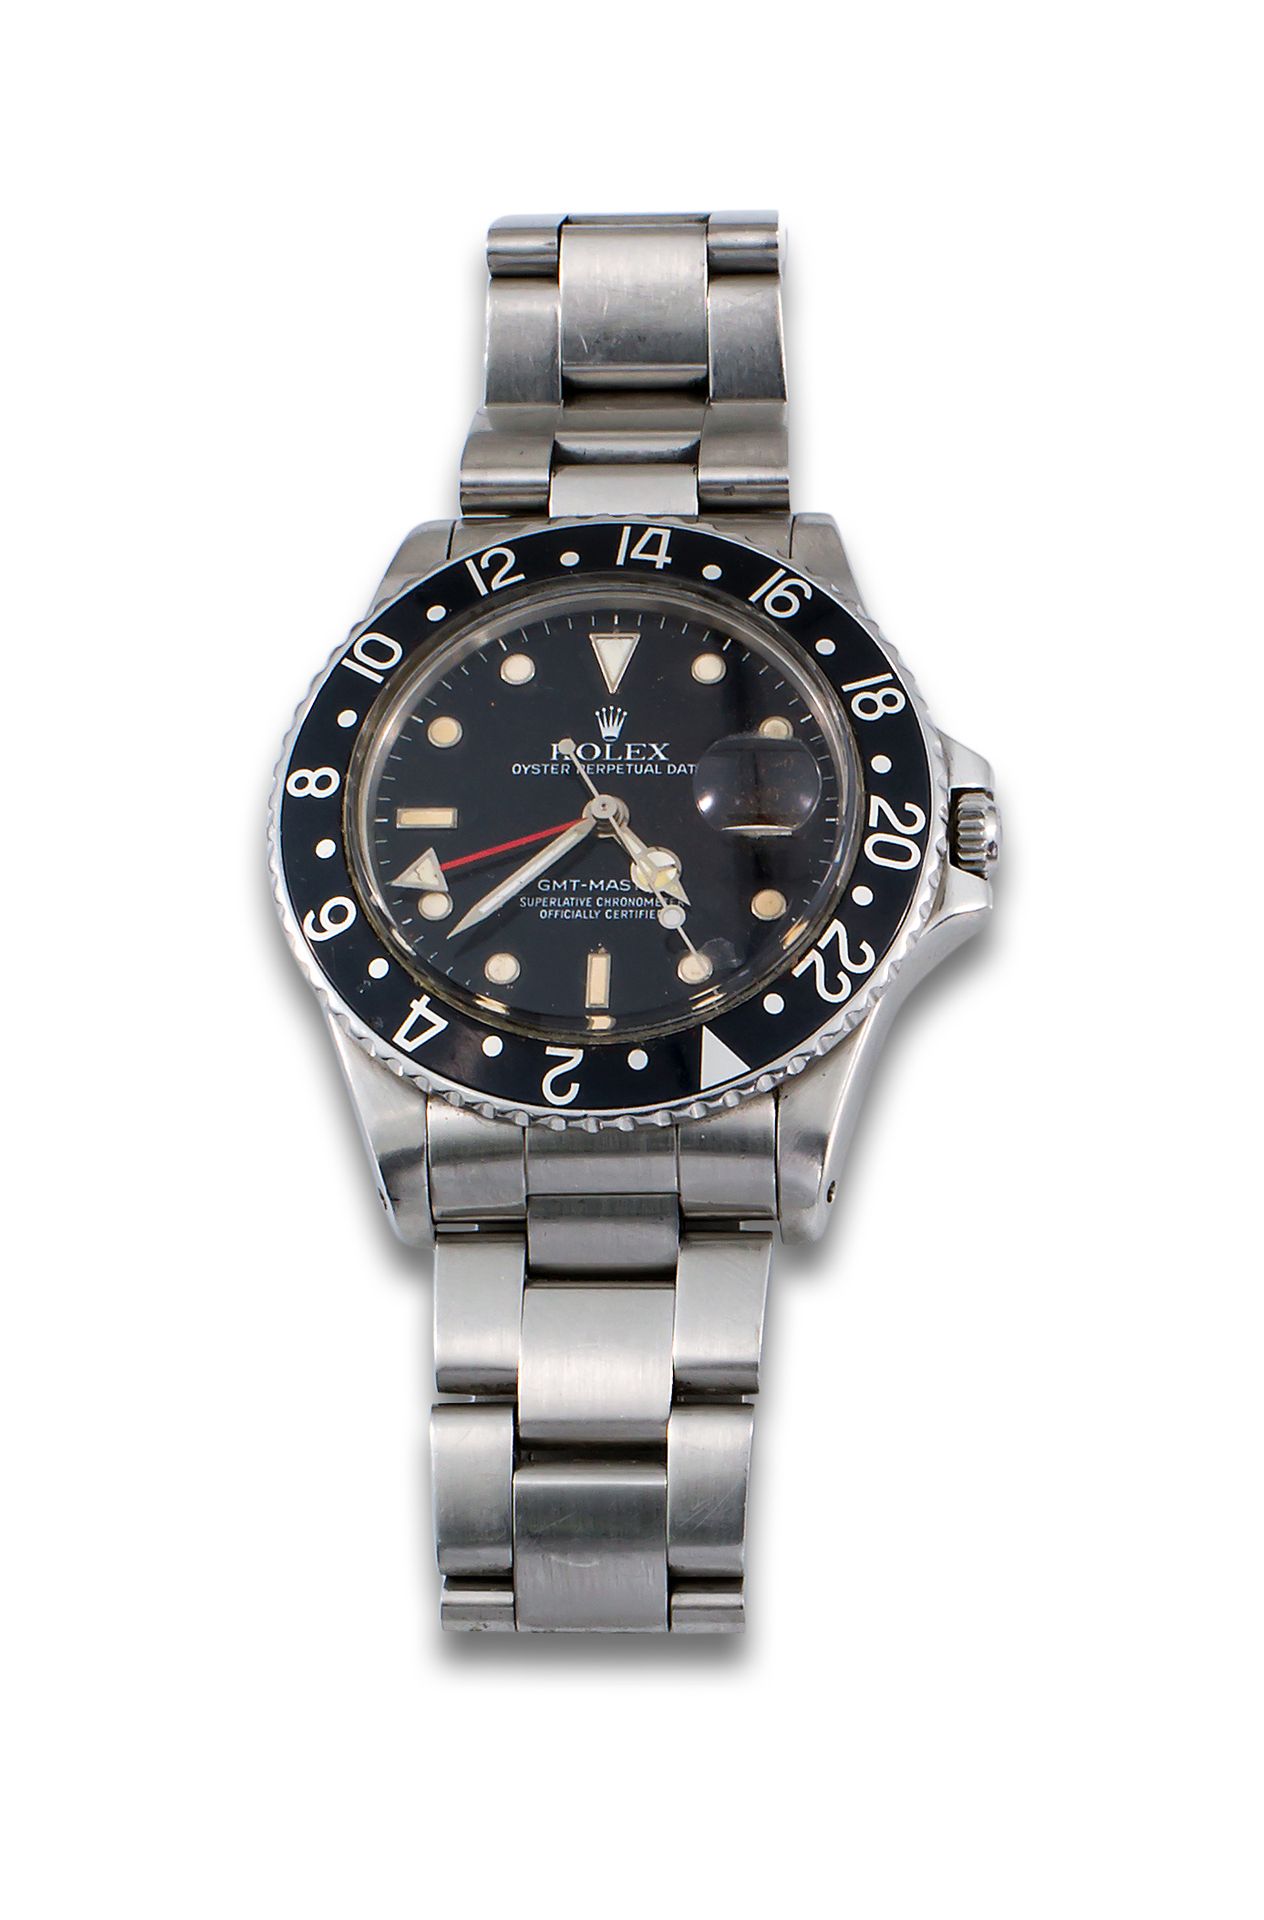 ROLEX GMT MASTER STEEL WATCH ROLEX GMT MASTER watch, stainless steel case and br&hellip;